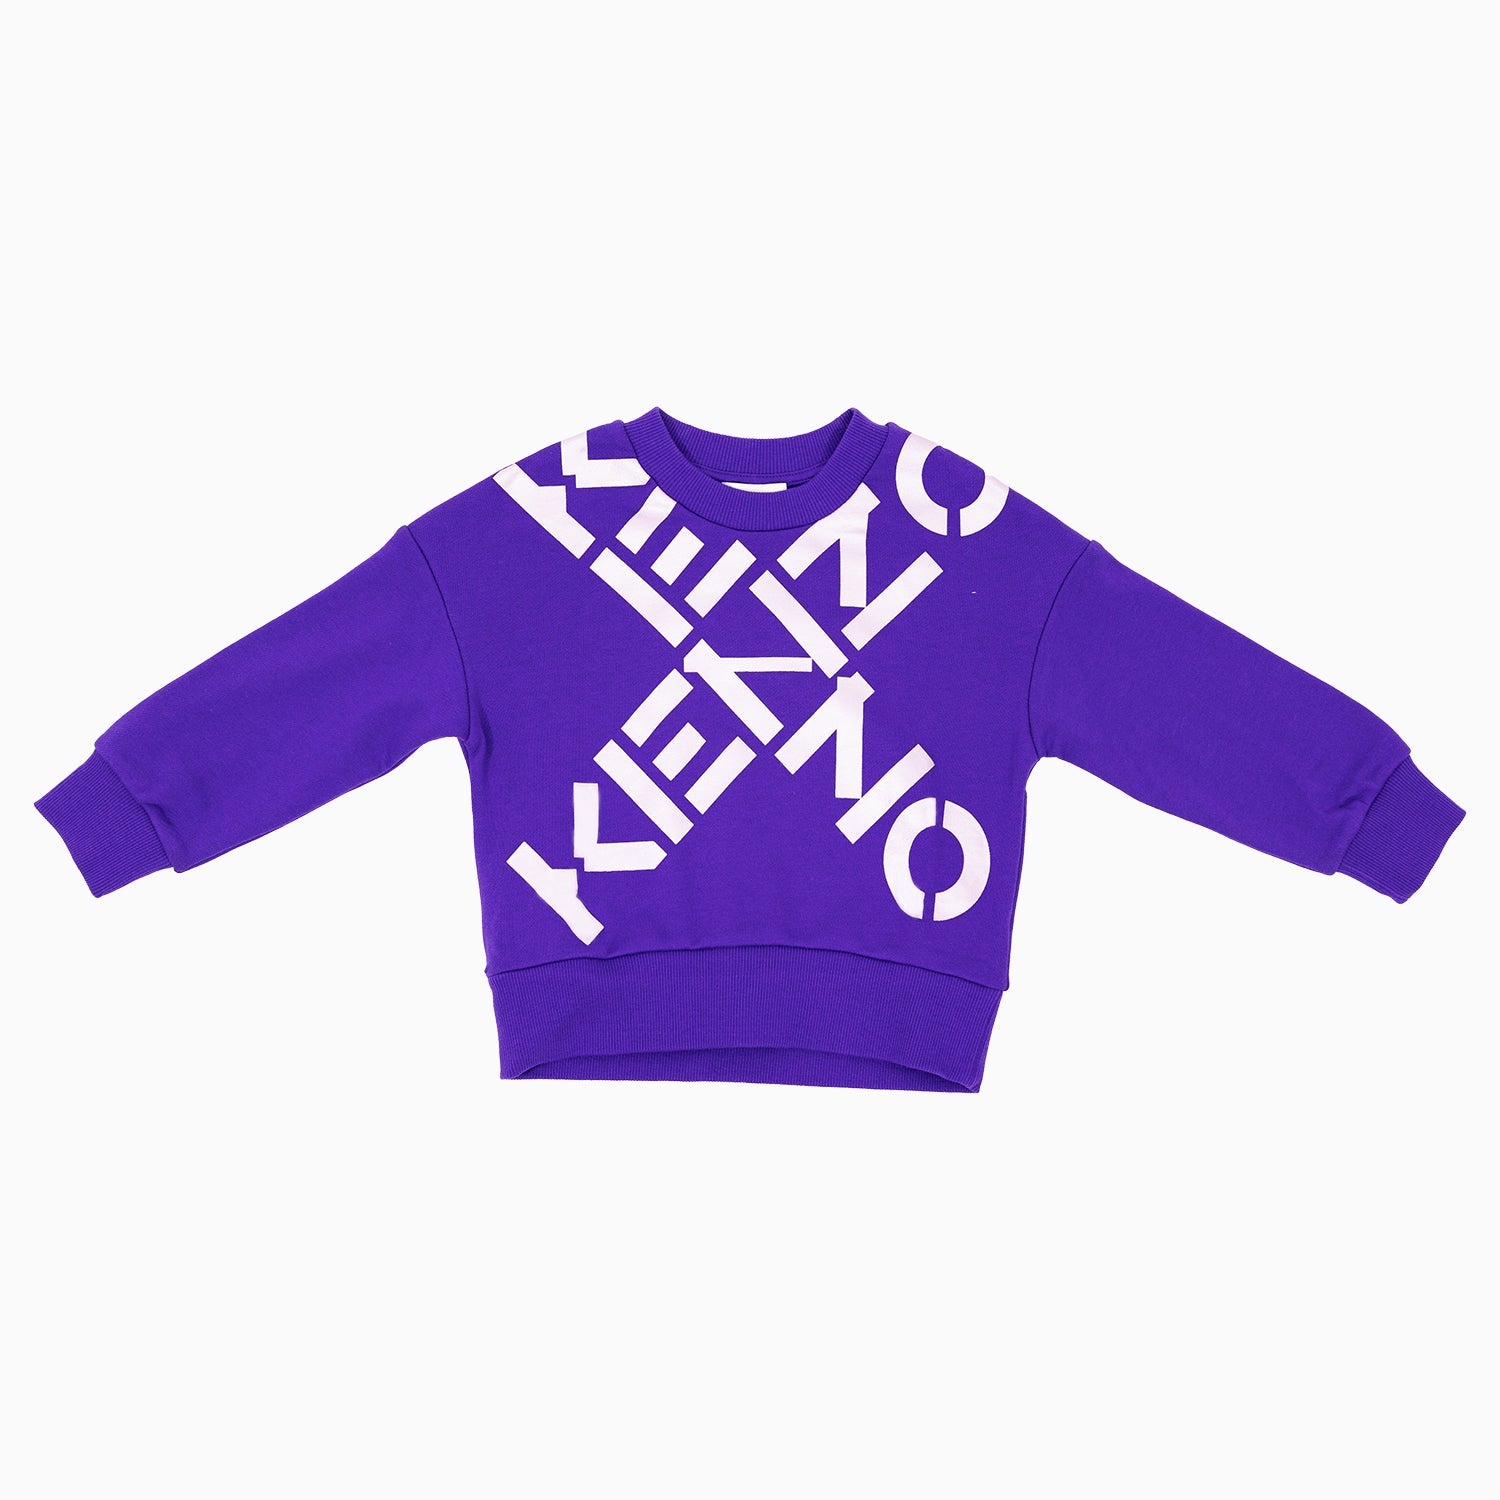 kenzo-kids-maxi-cross-sweatshirt-k15581-942